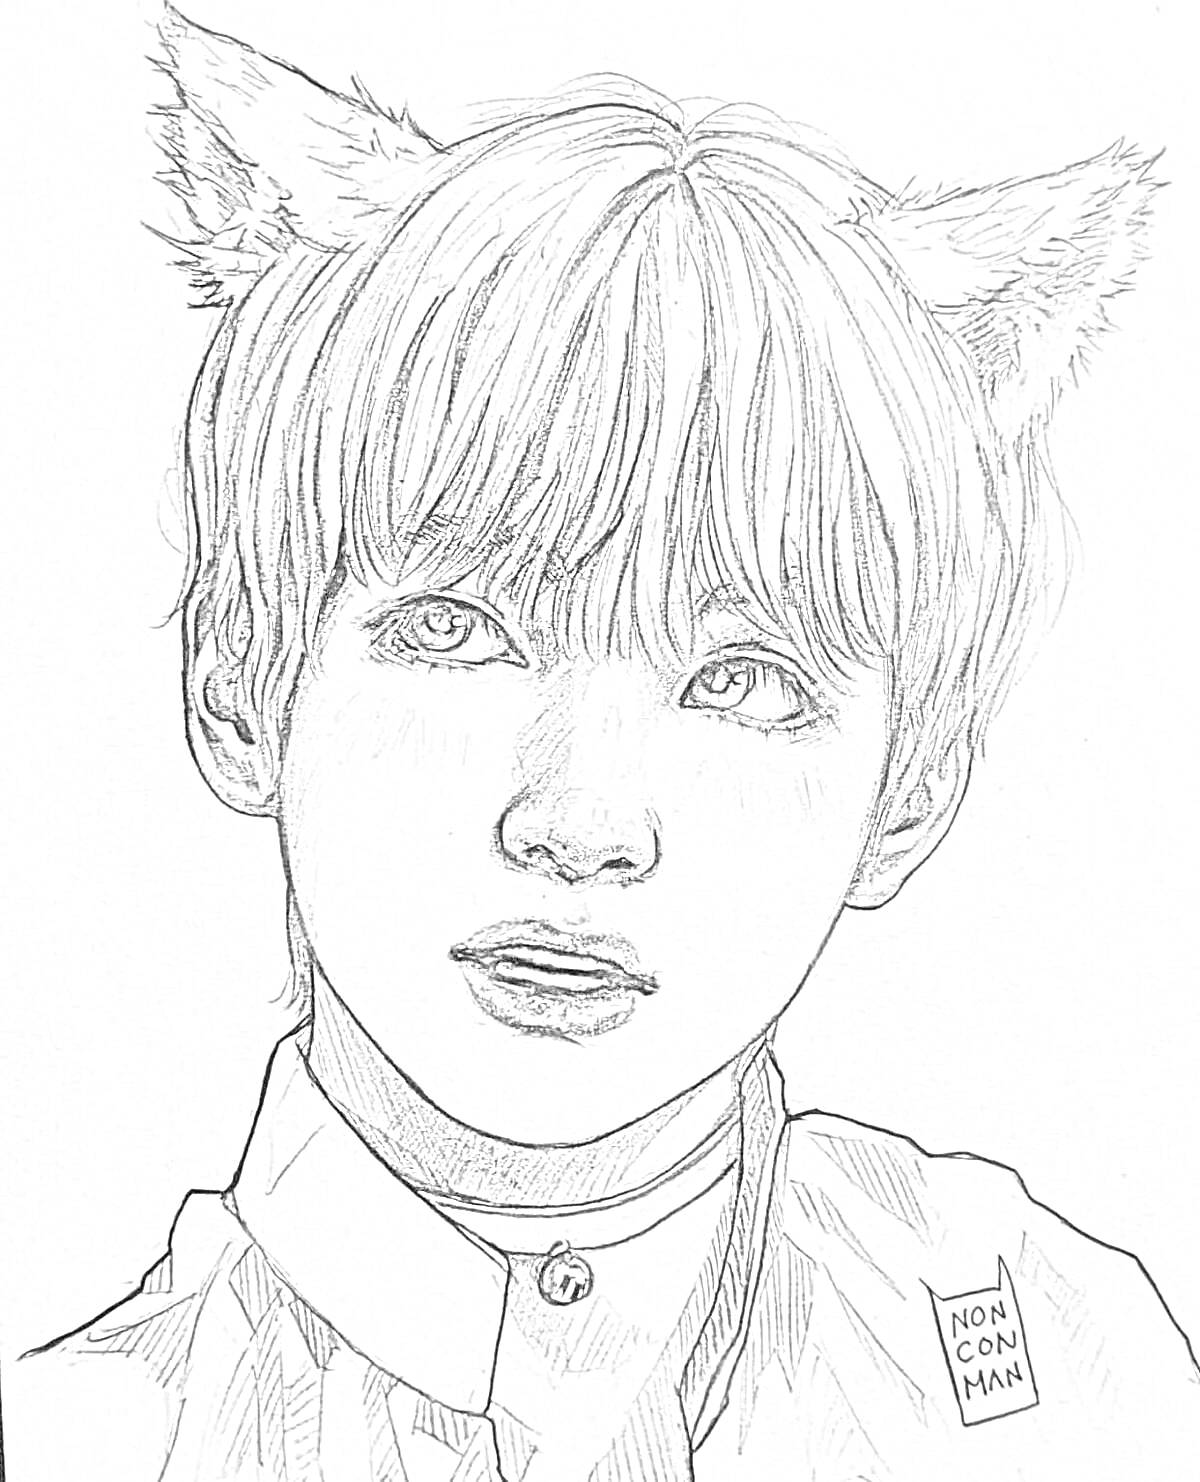 РаскраскаПортрет корейца с кошачьими ушами и воротником с колокольчиком